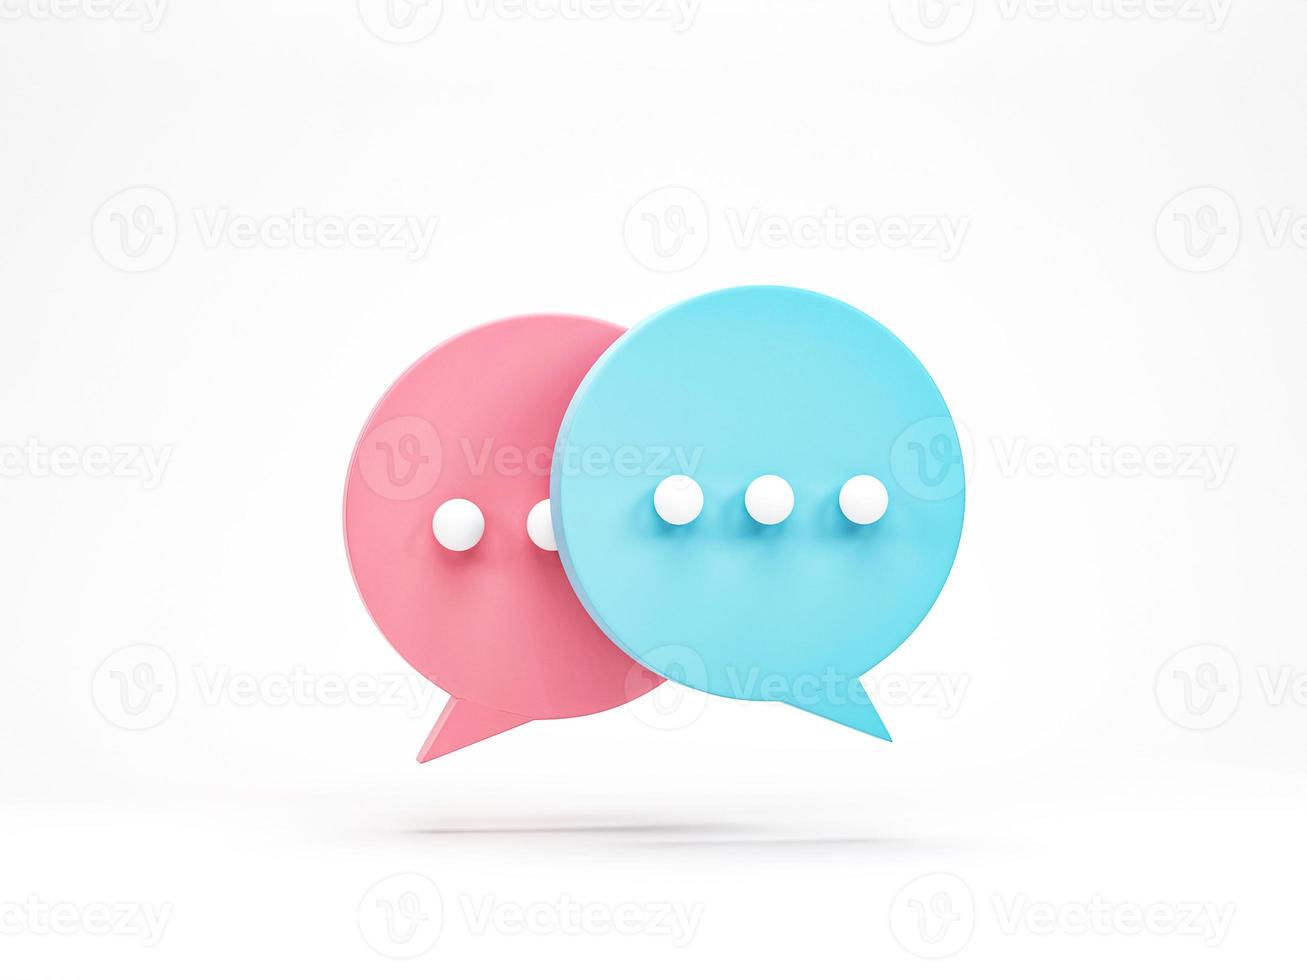 representación 3d, ilustración 3d. icono de burbuja de chat aislado sobre fondo blanco. escritura mínima de chat rosa y azul. elemento de diseño para redes sociales, mensajes o comentarios. foto